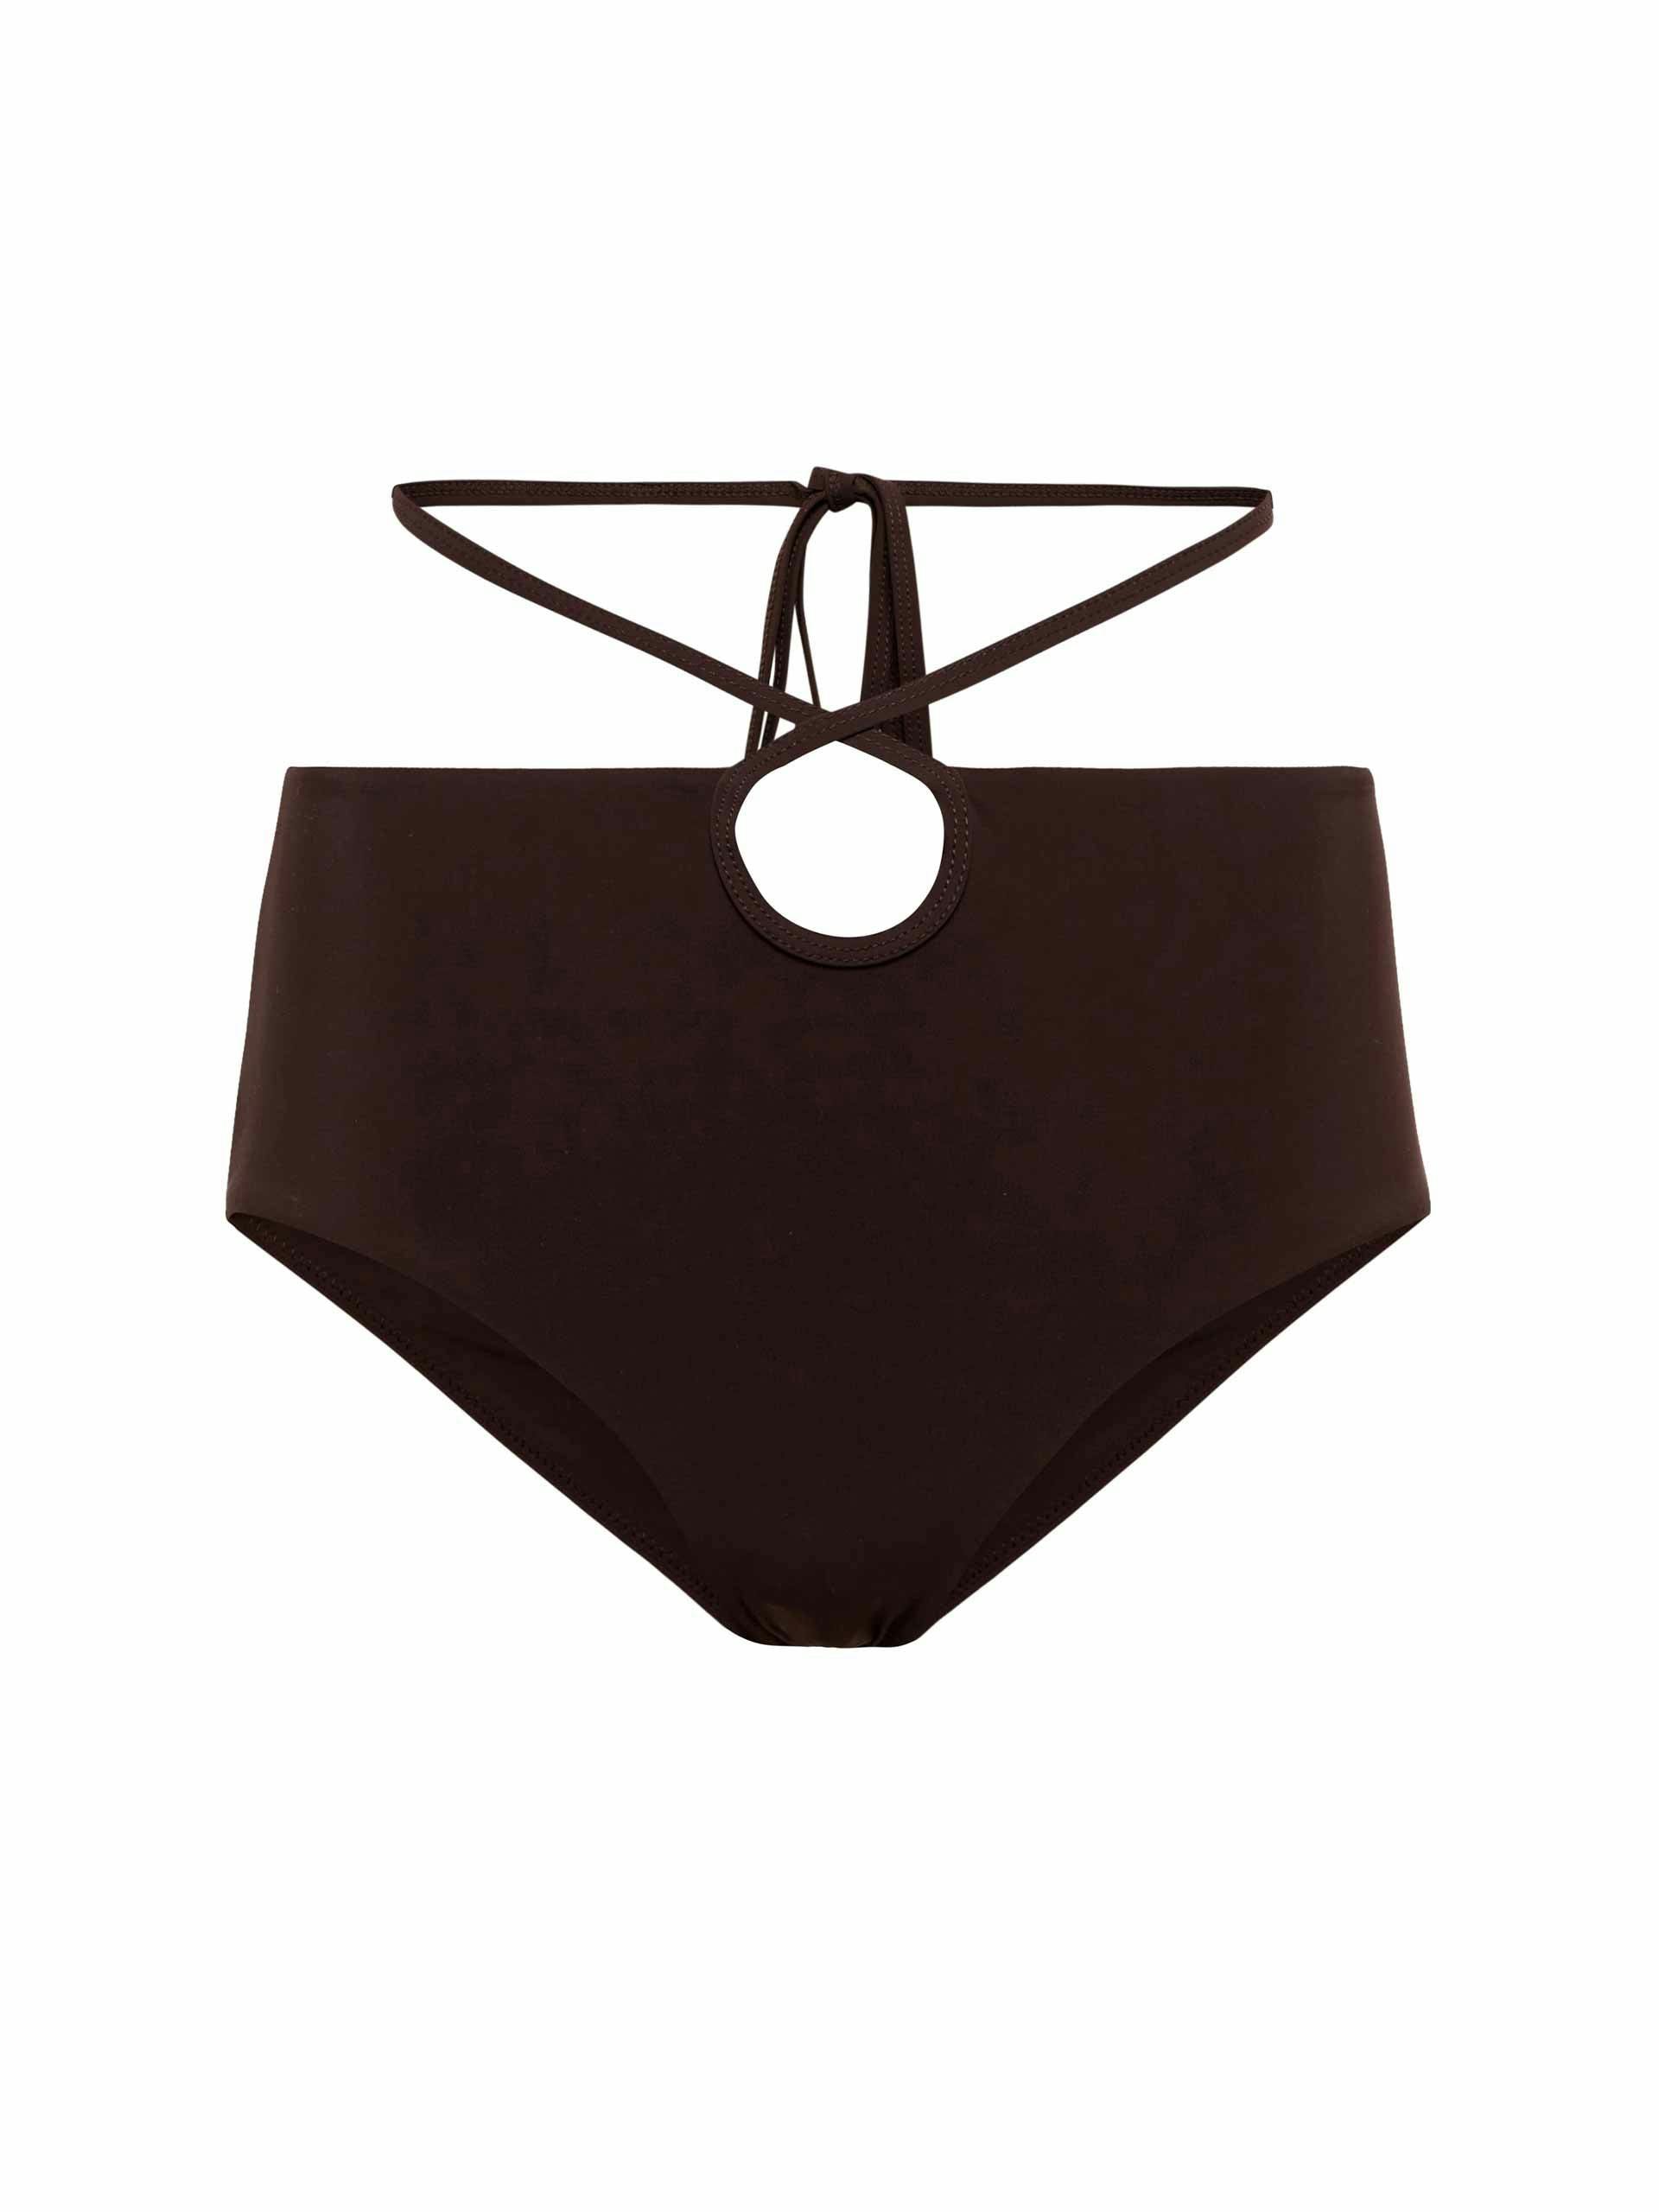 Brown wraparound bikini bottoms